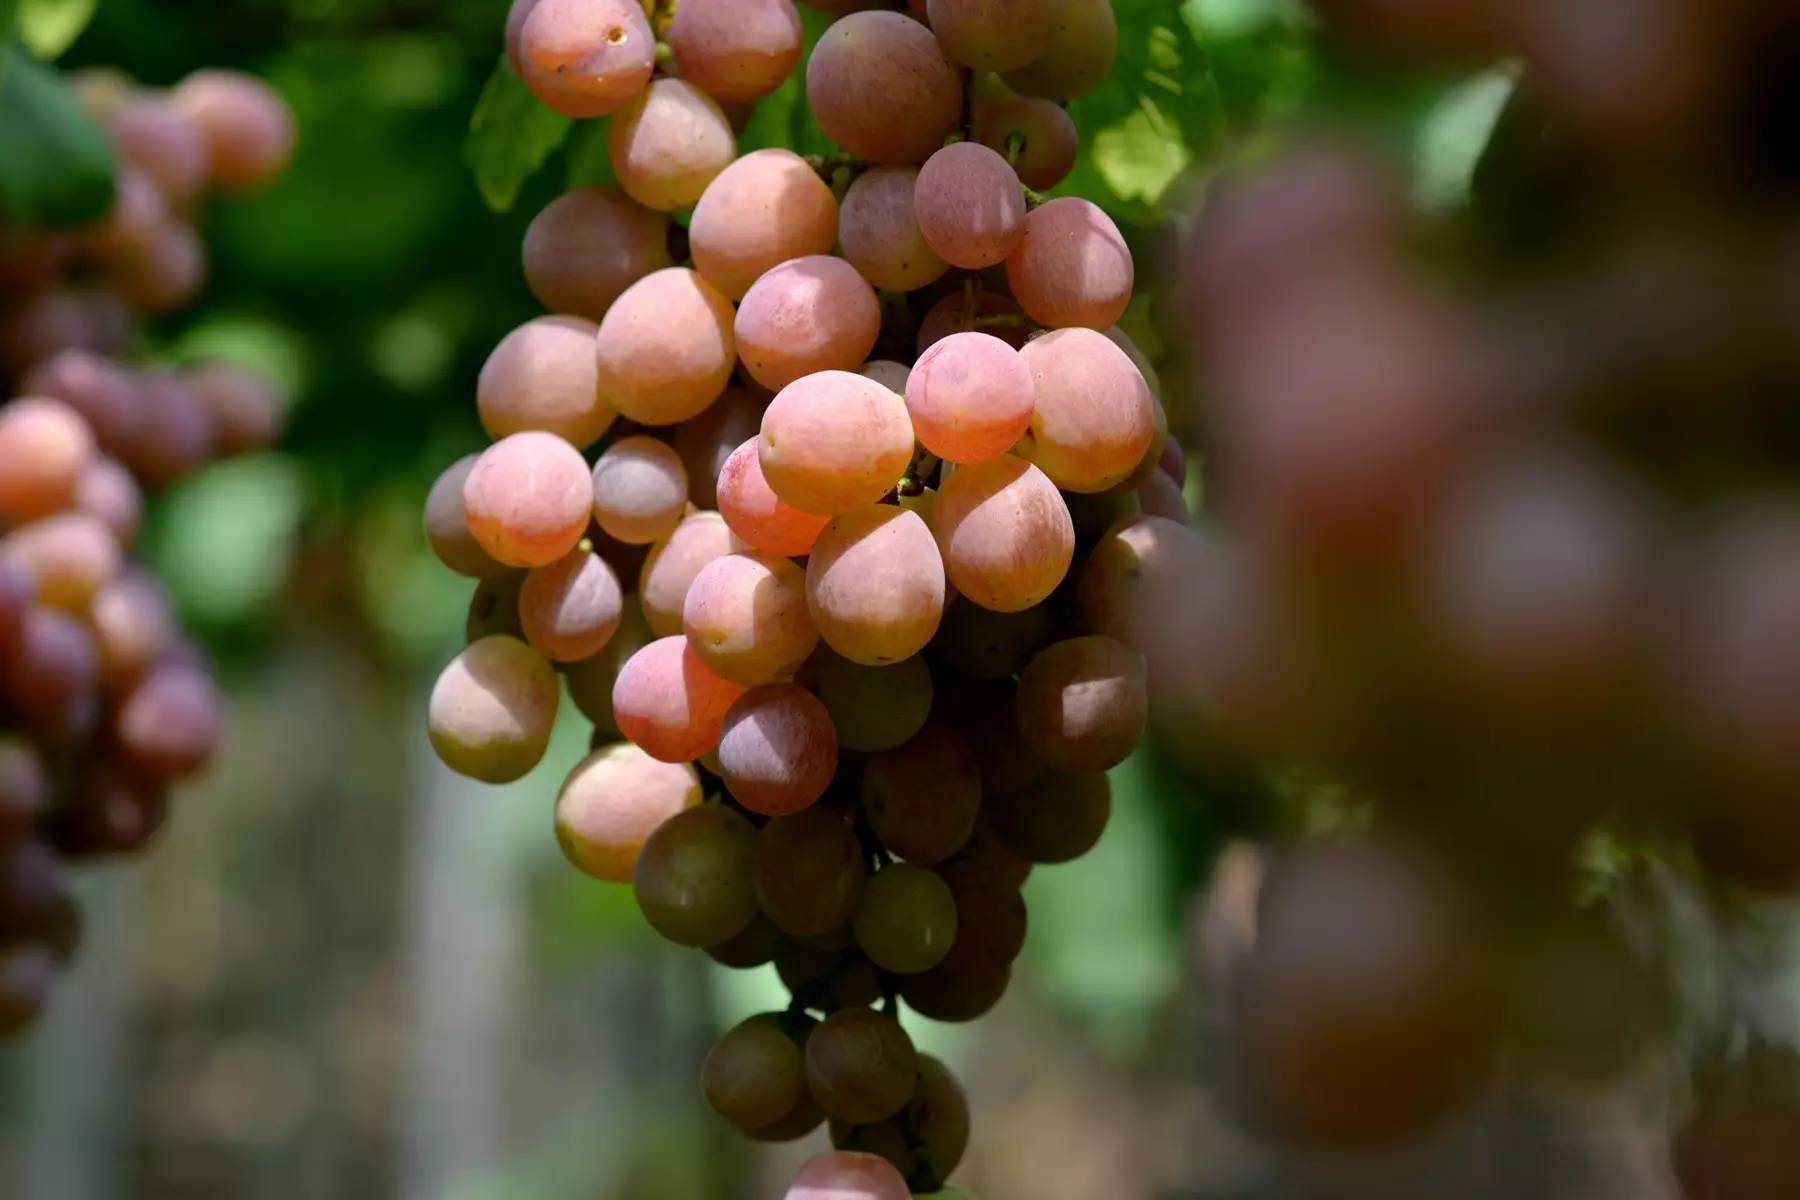 平阳喜乐葡萄园的葡萄开始熟了甜了可以去采摘了